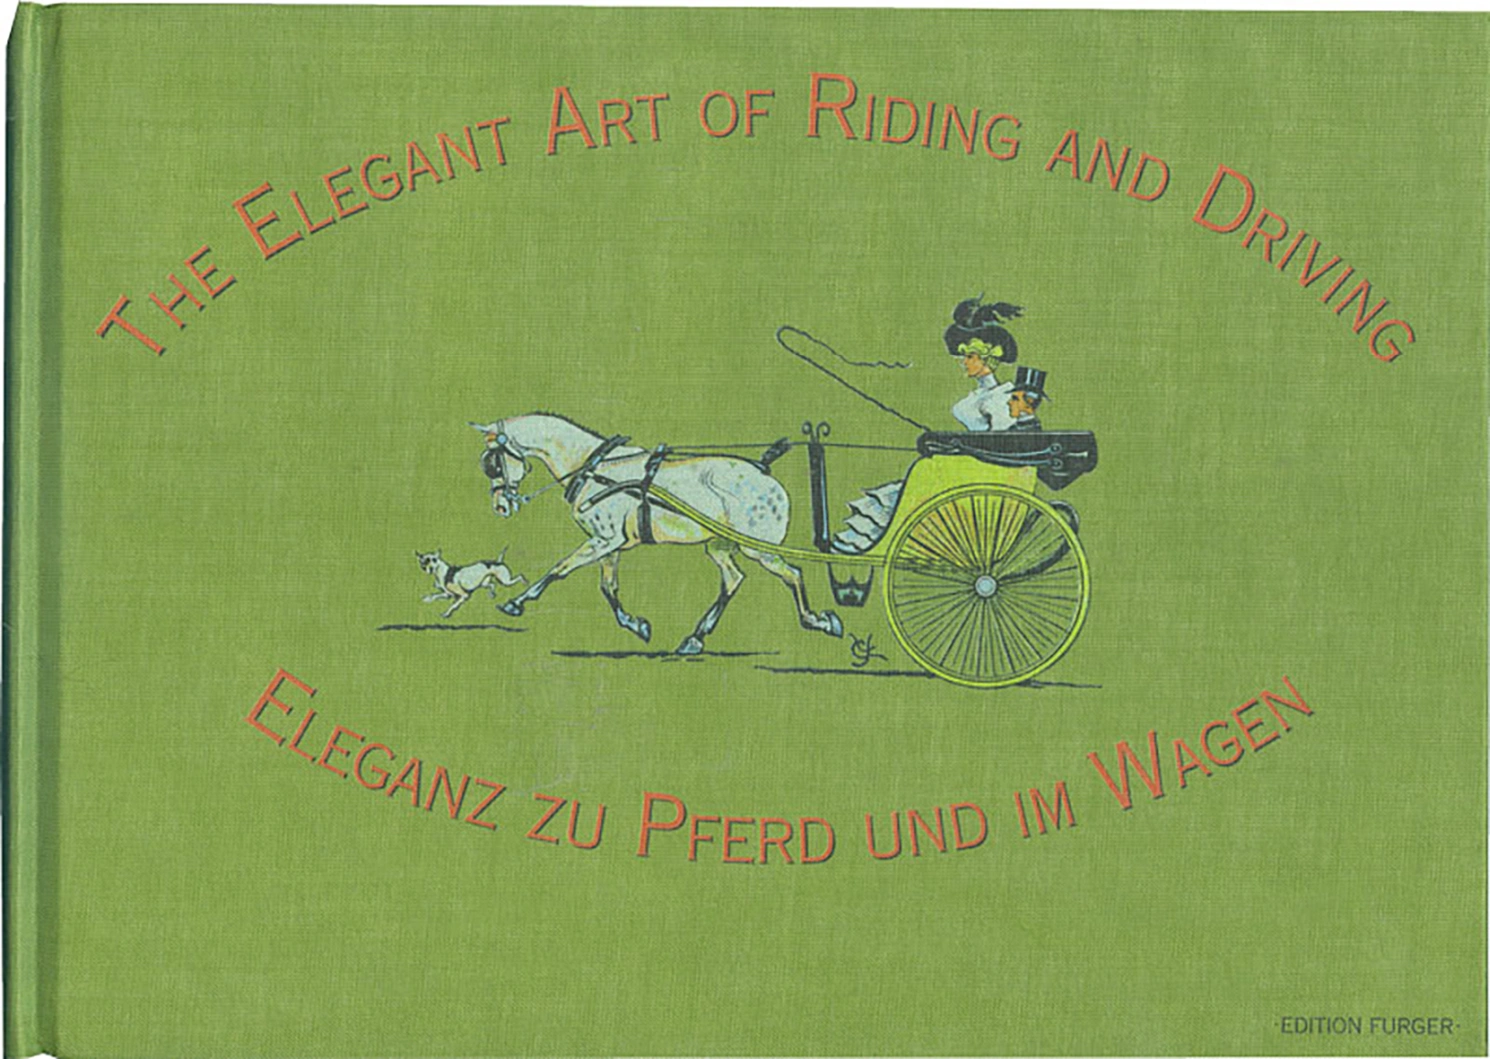 Eleganz zu Pferd und im Wagen / The Elegant Art of Riding and Driving von Geoarg Olms AG 